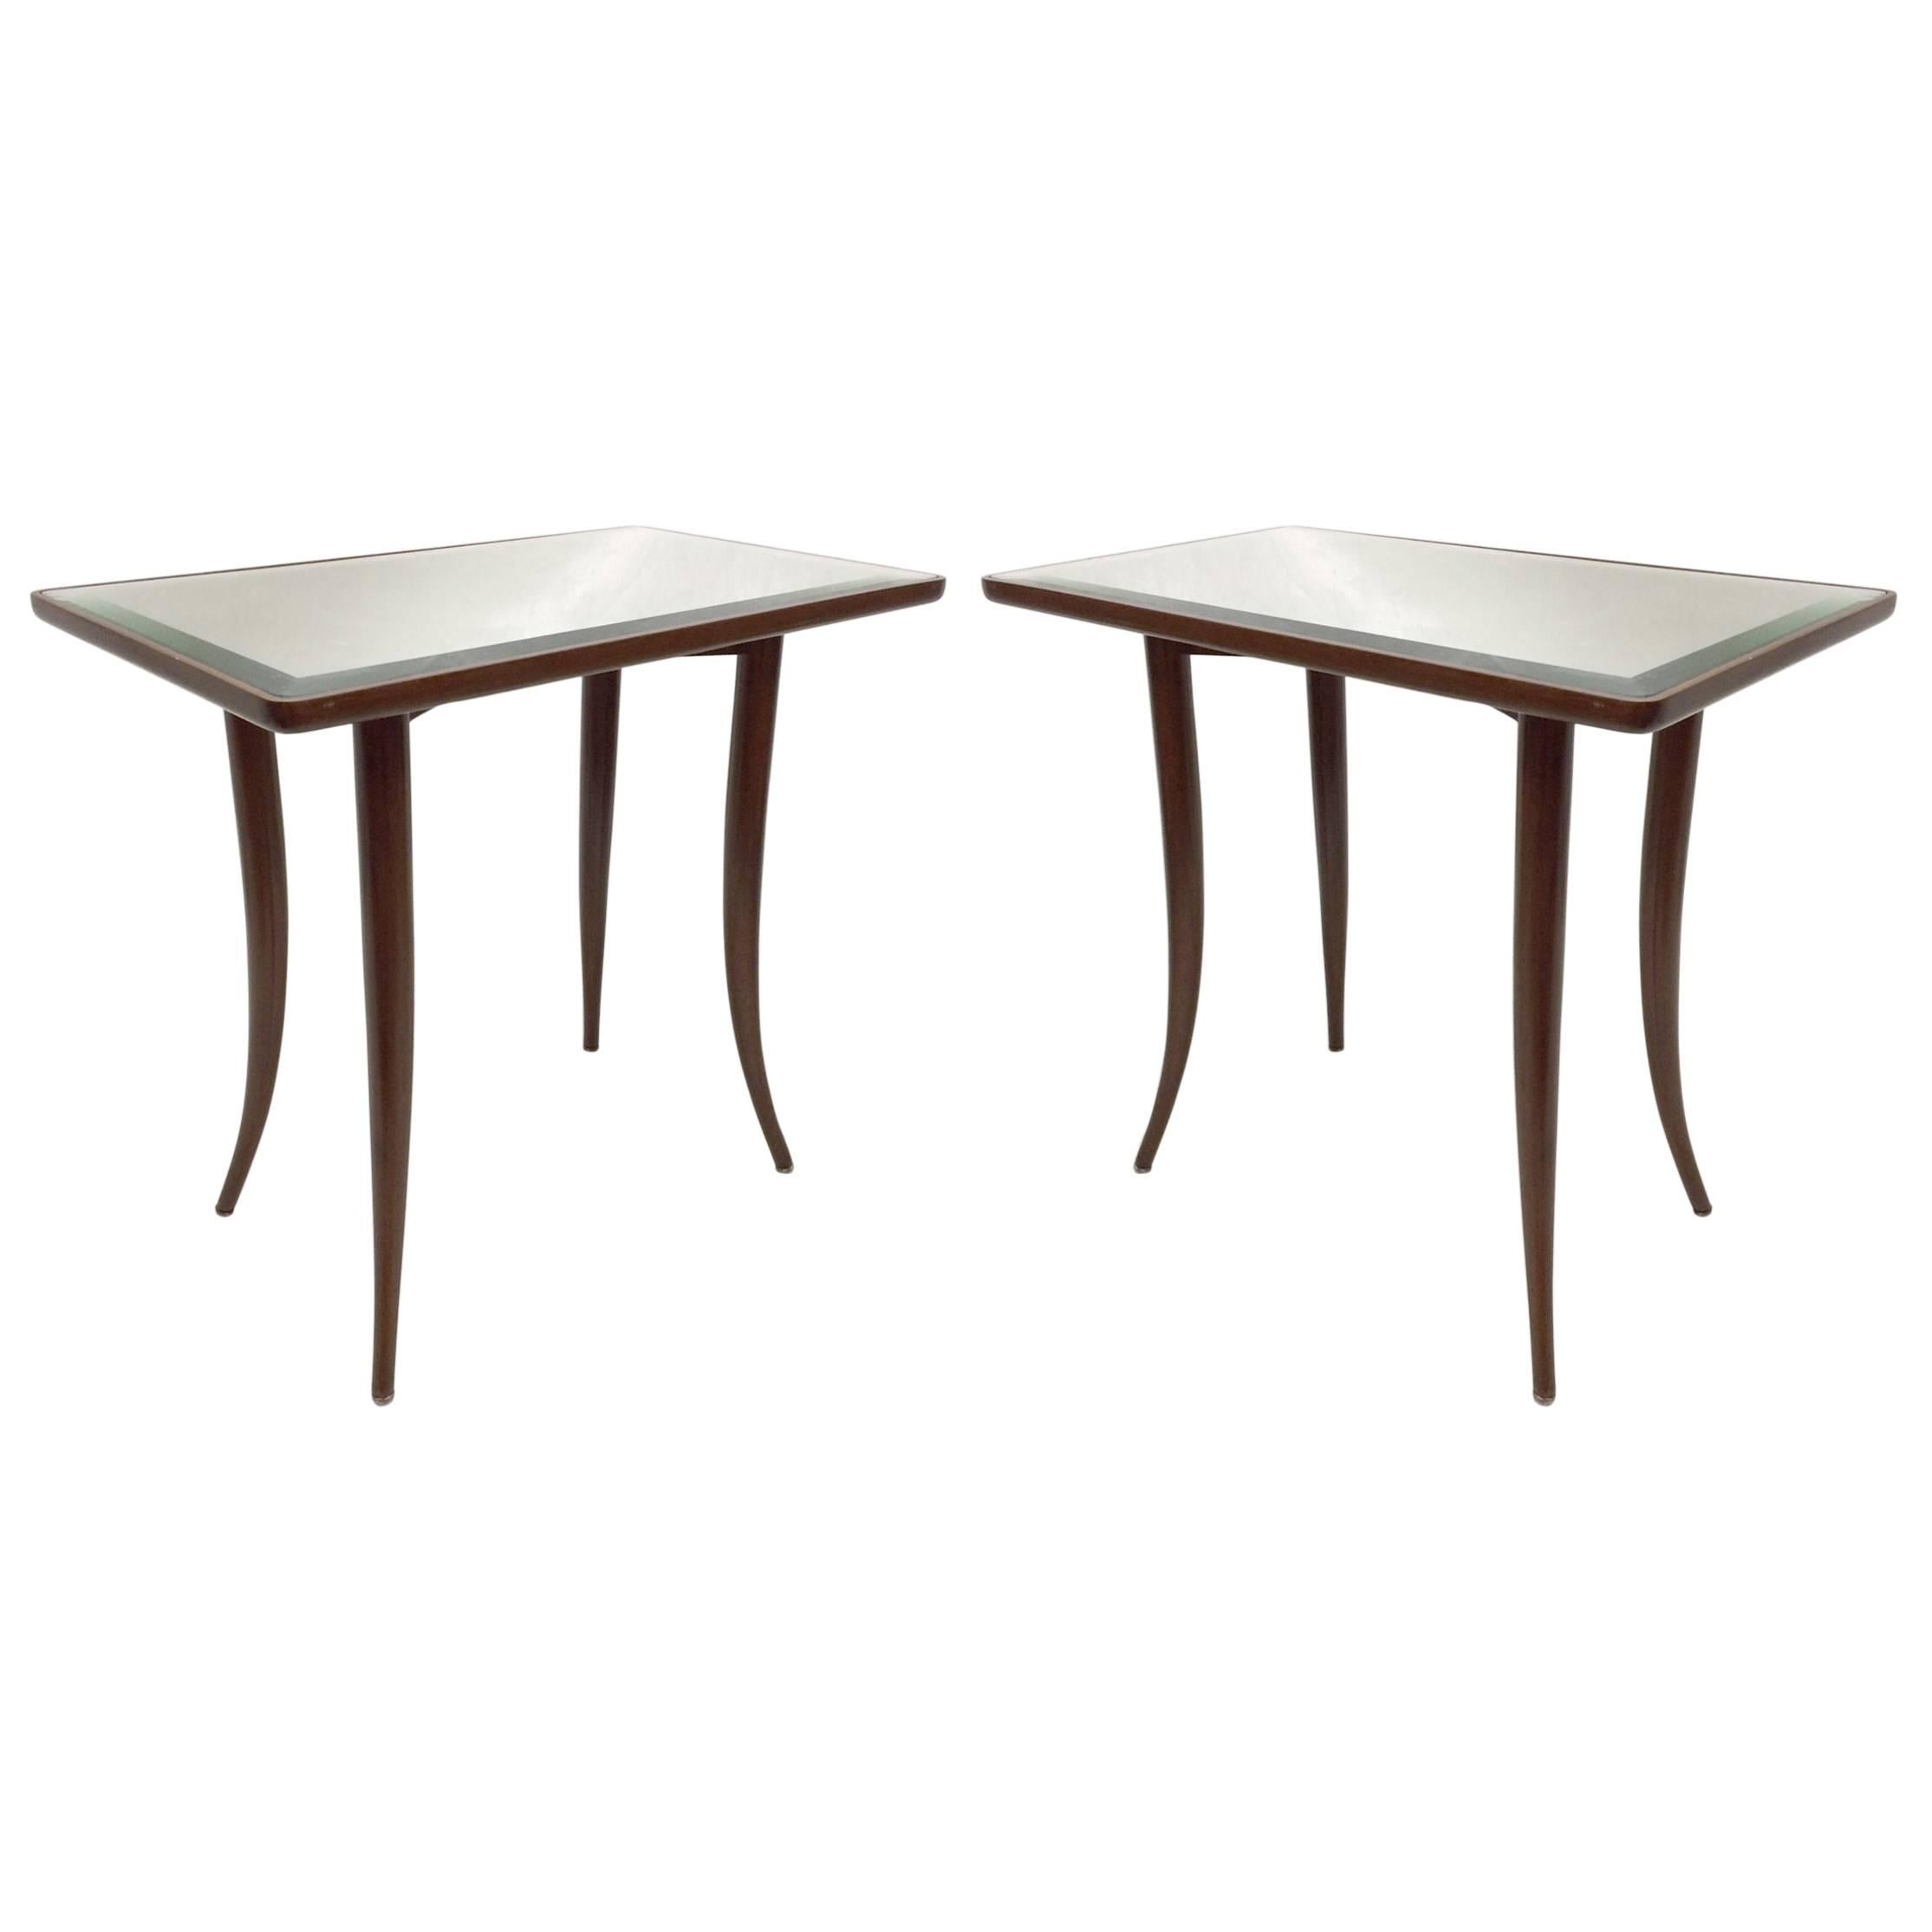 Elegant Pair of  Side Tables by T.H. Robsjohn-Gibbings for John Widdicomb 